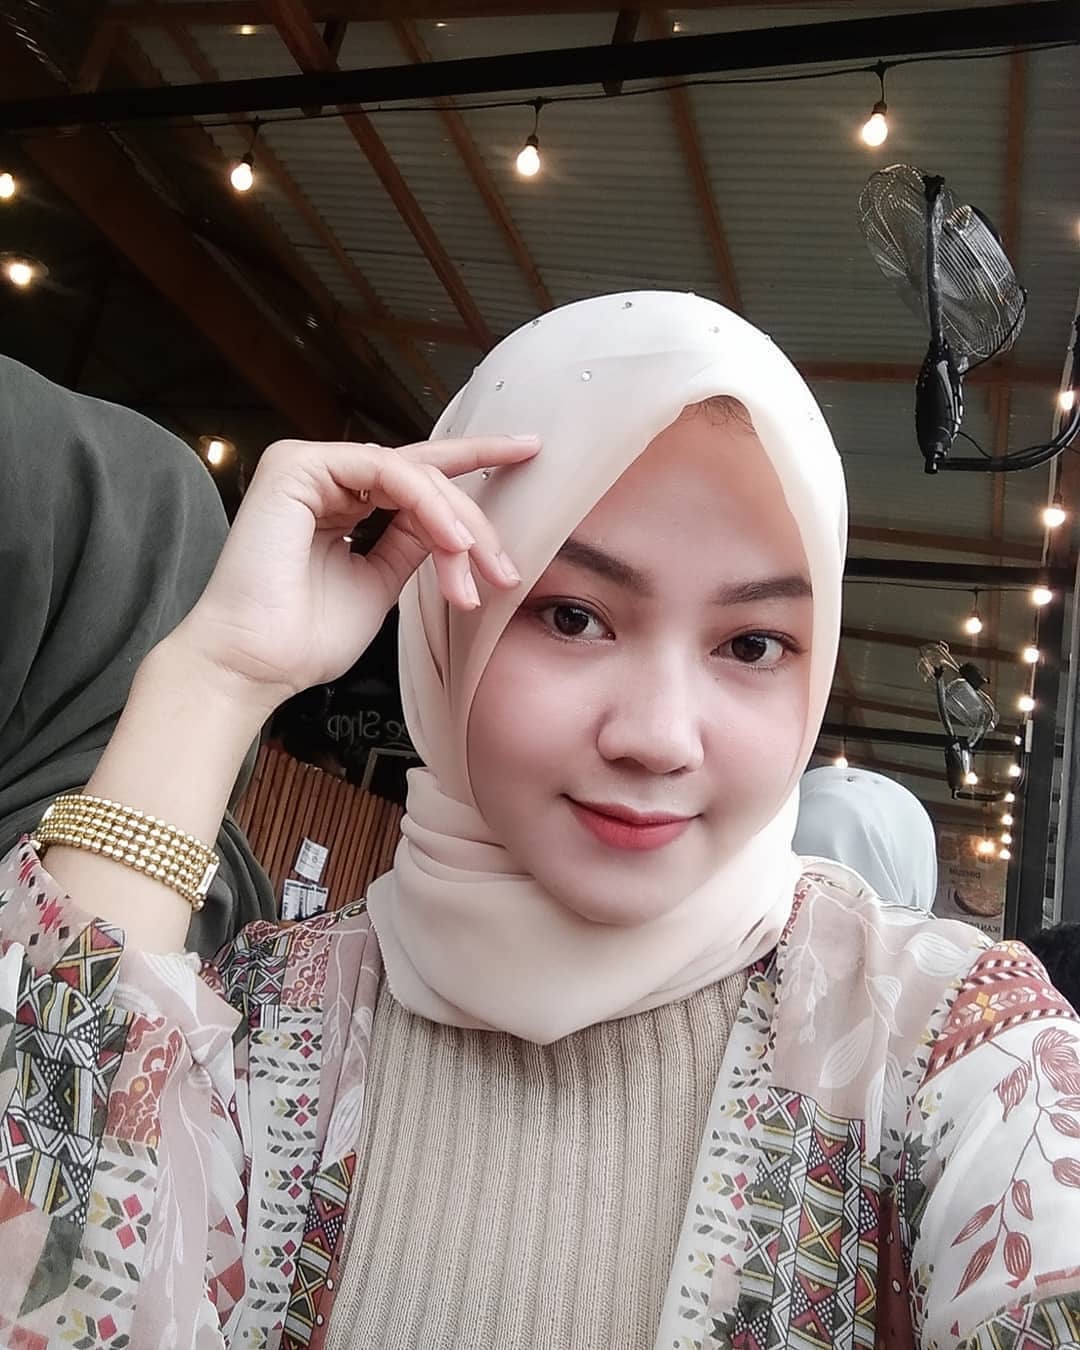  Janda  Muda Cantik  Makassar Fitri Hafya Mencari Jodoh Serius Janda  Single Cantik 